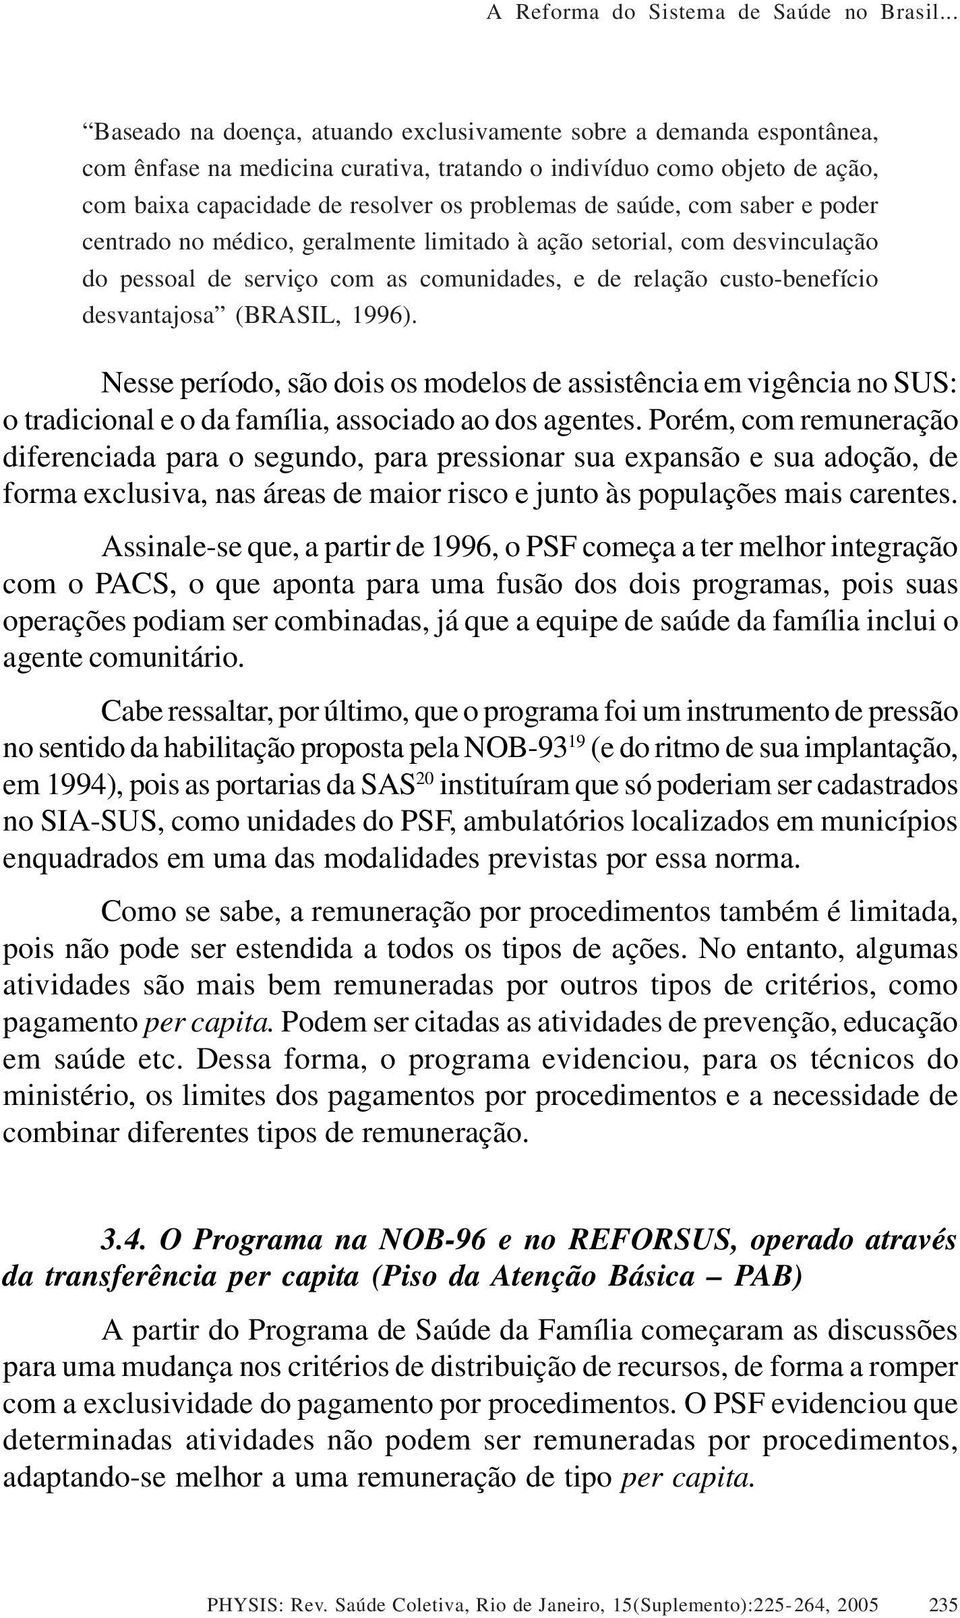 saúde, com saber e poder centrado no médico, geralmente limitado à ação setorial, com desvinculação do pessoal de serviço com as comunidades, e de relação custobenefício desvantajosa (BRASIL, 1996).